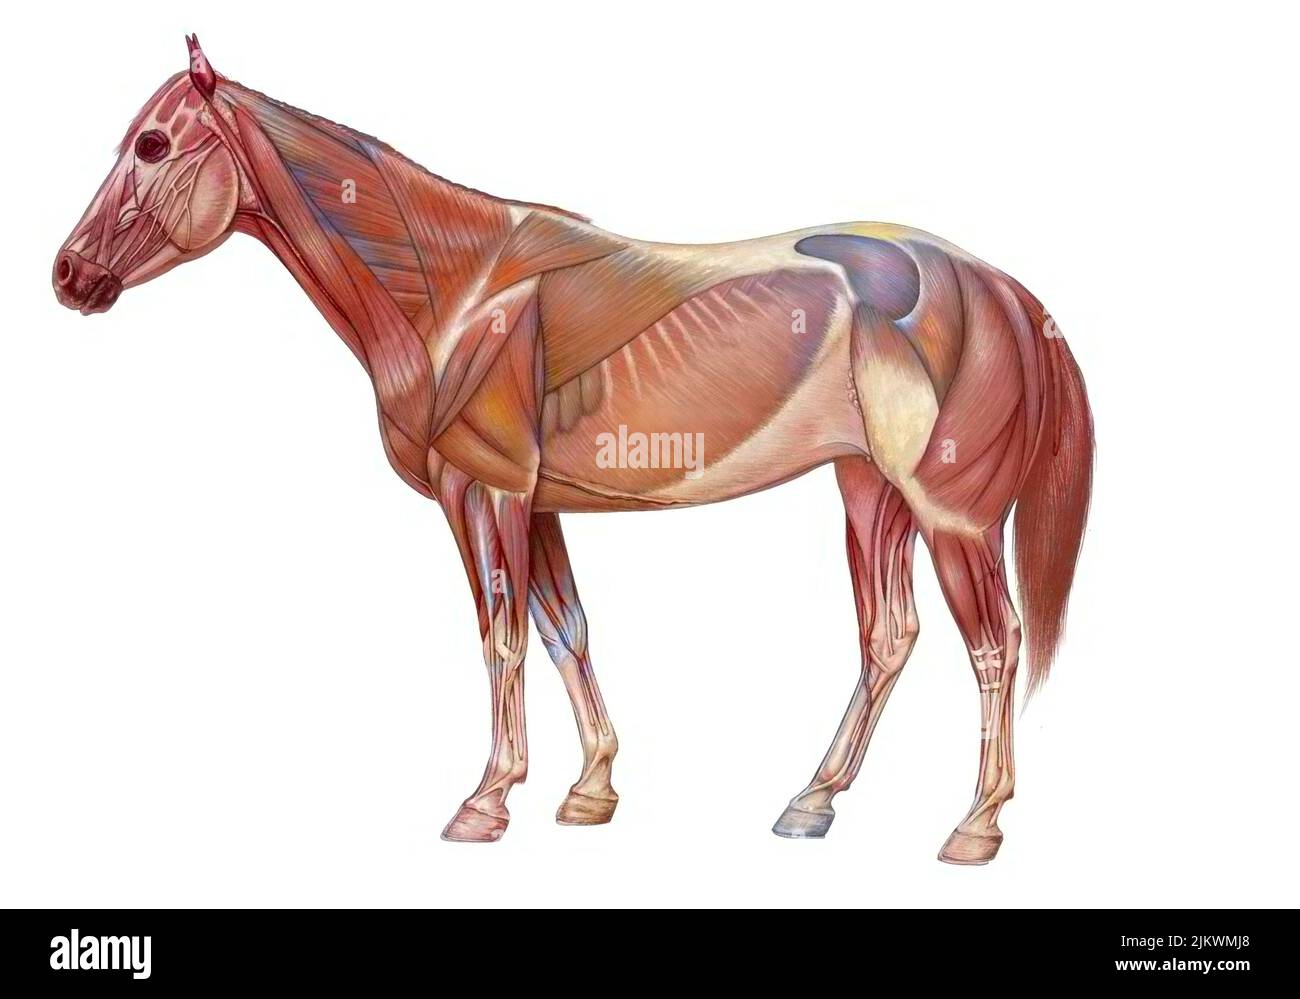 Anatomia del cavallo con il suo sistema muscolare. Foto Stock